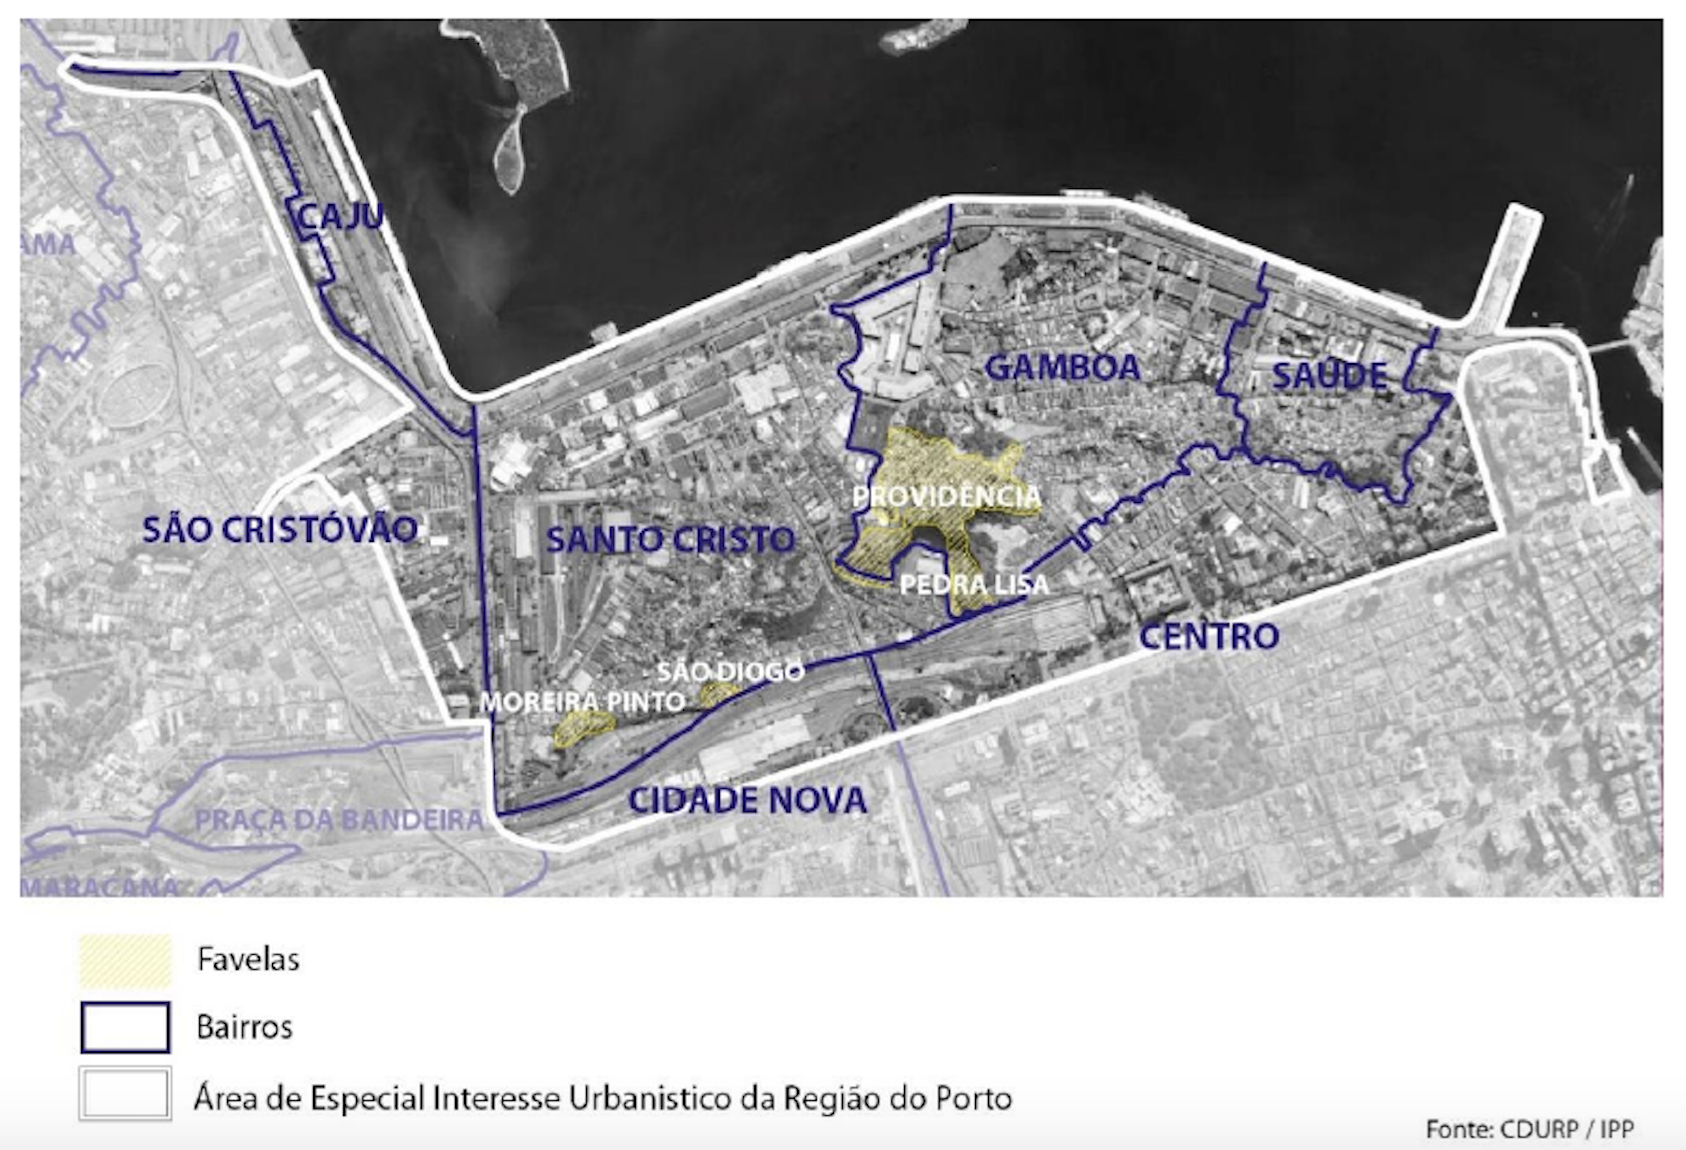 Delimitada no mapa pela linha branca, a área do Porto Maravilha equivale a quase um terço do centro da cidade (Imagem: Mariana Werneck, a partir de dados da Cdurp/IPP)